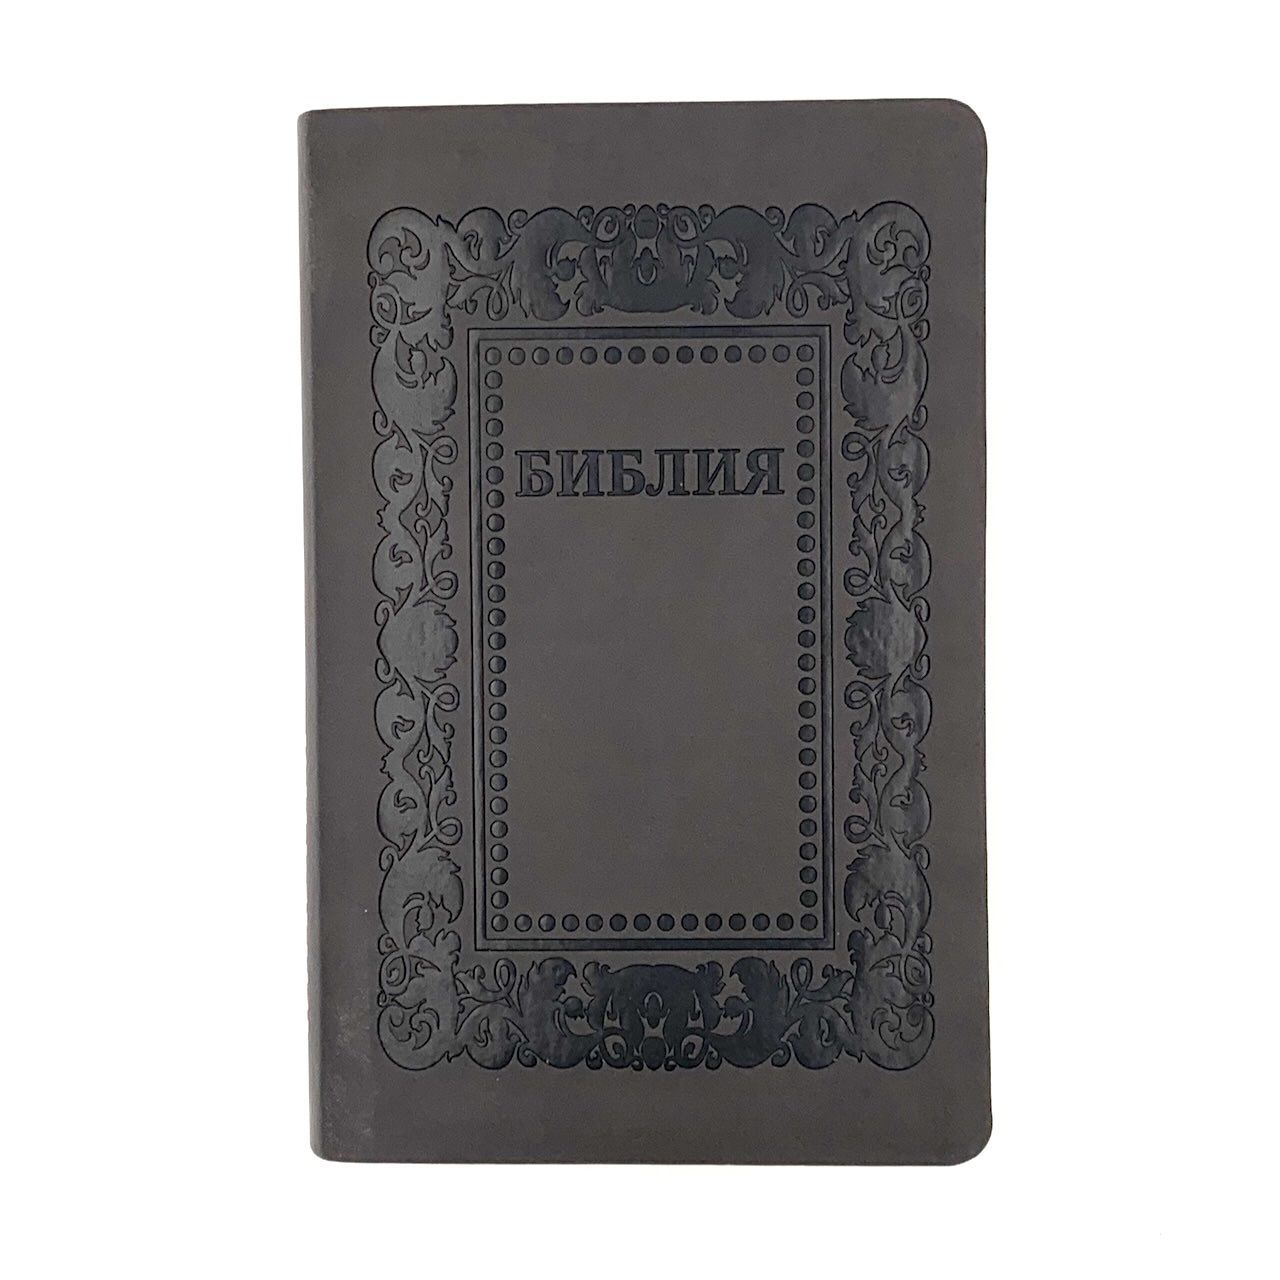 Библия 055 код F1 дизайн "термо рамка барокко", переплет из искусственной кожи, цвет темно-серый матовый, 140*215 мм